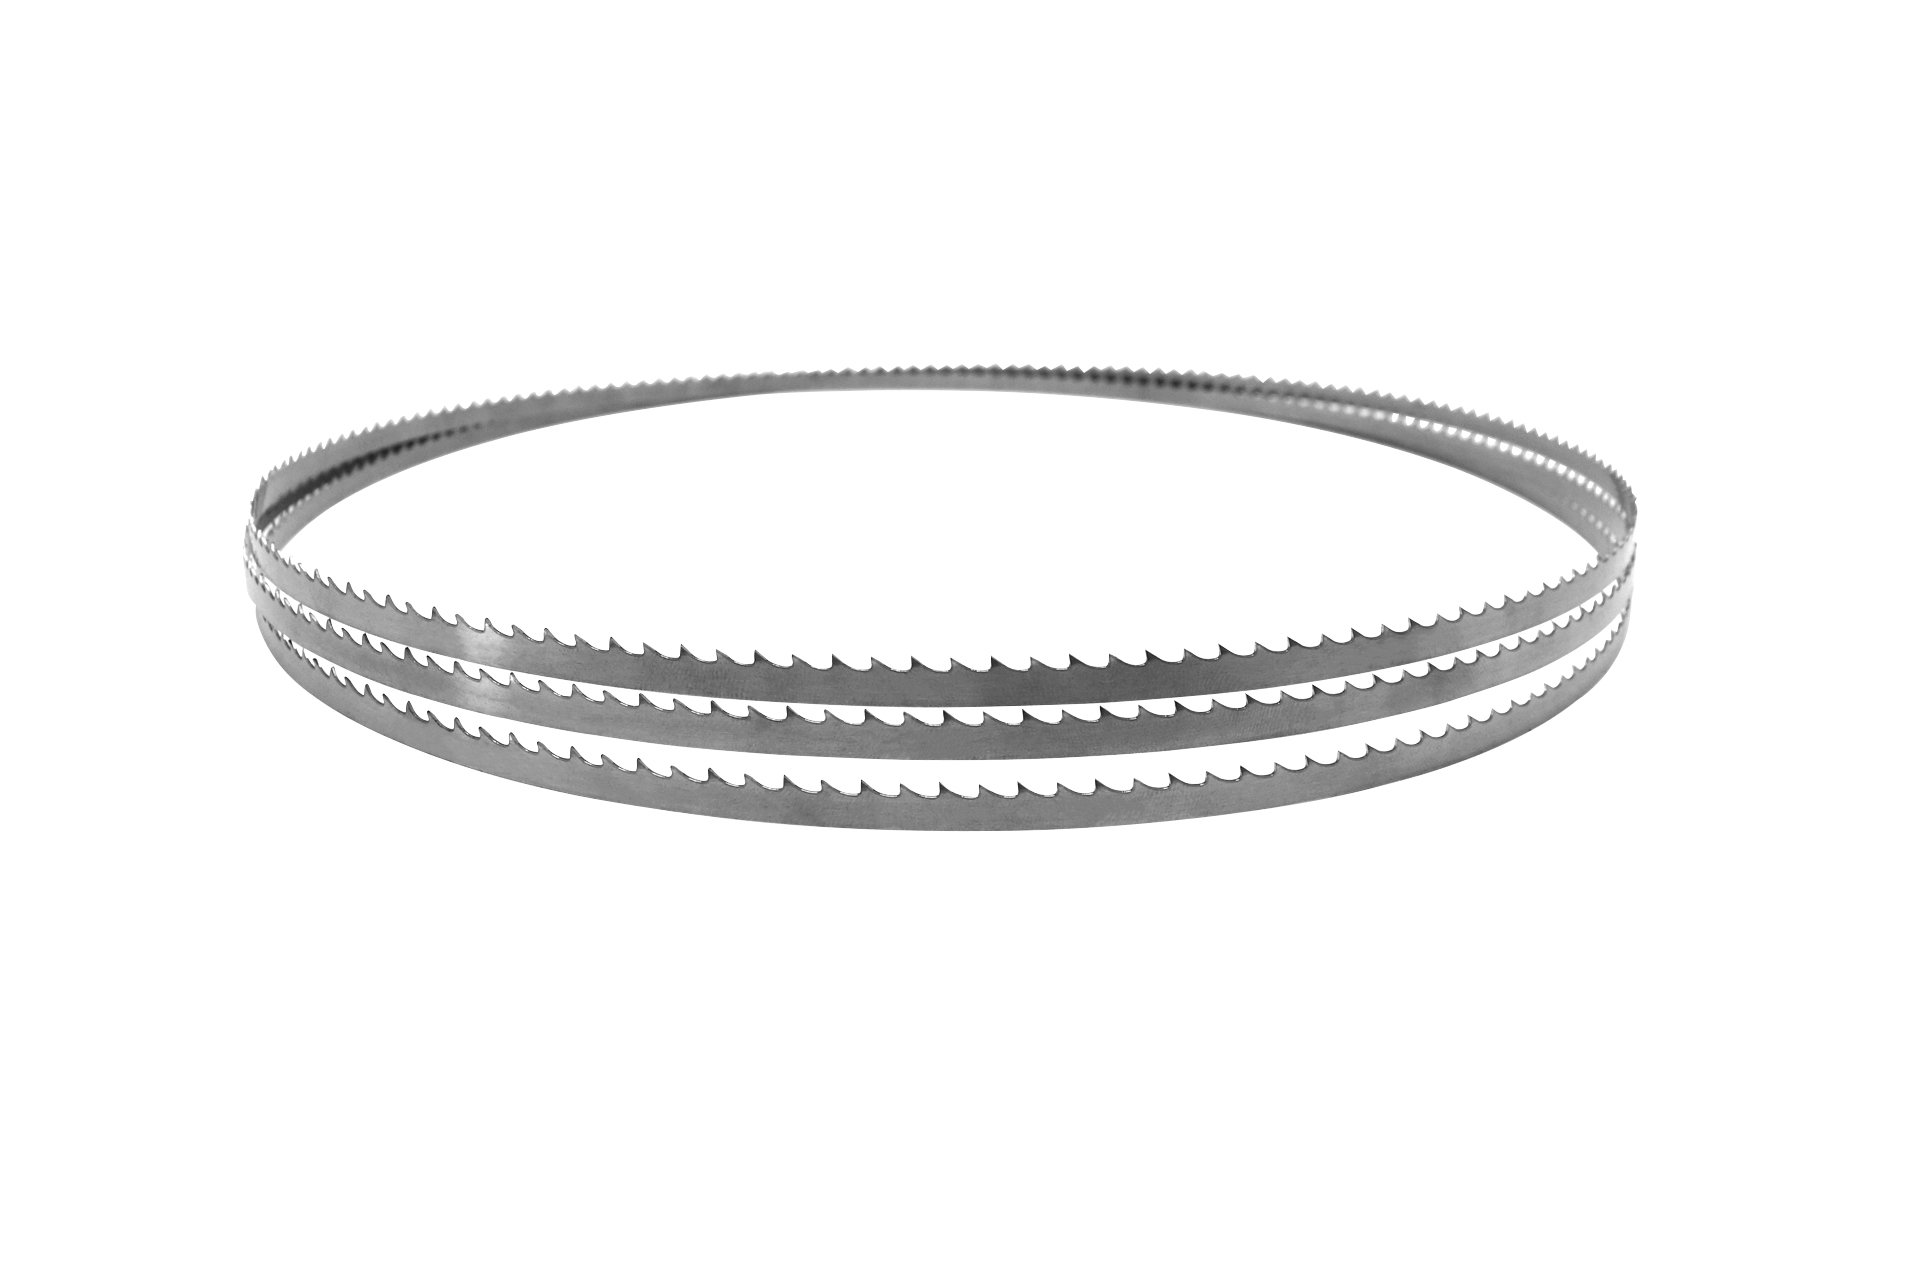 Sägeband aus Uddeholm-Stahl für MJ12, 2240 x 8 x 0,45 mm, 6 Zpz